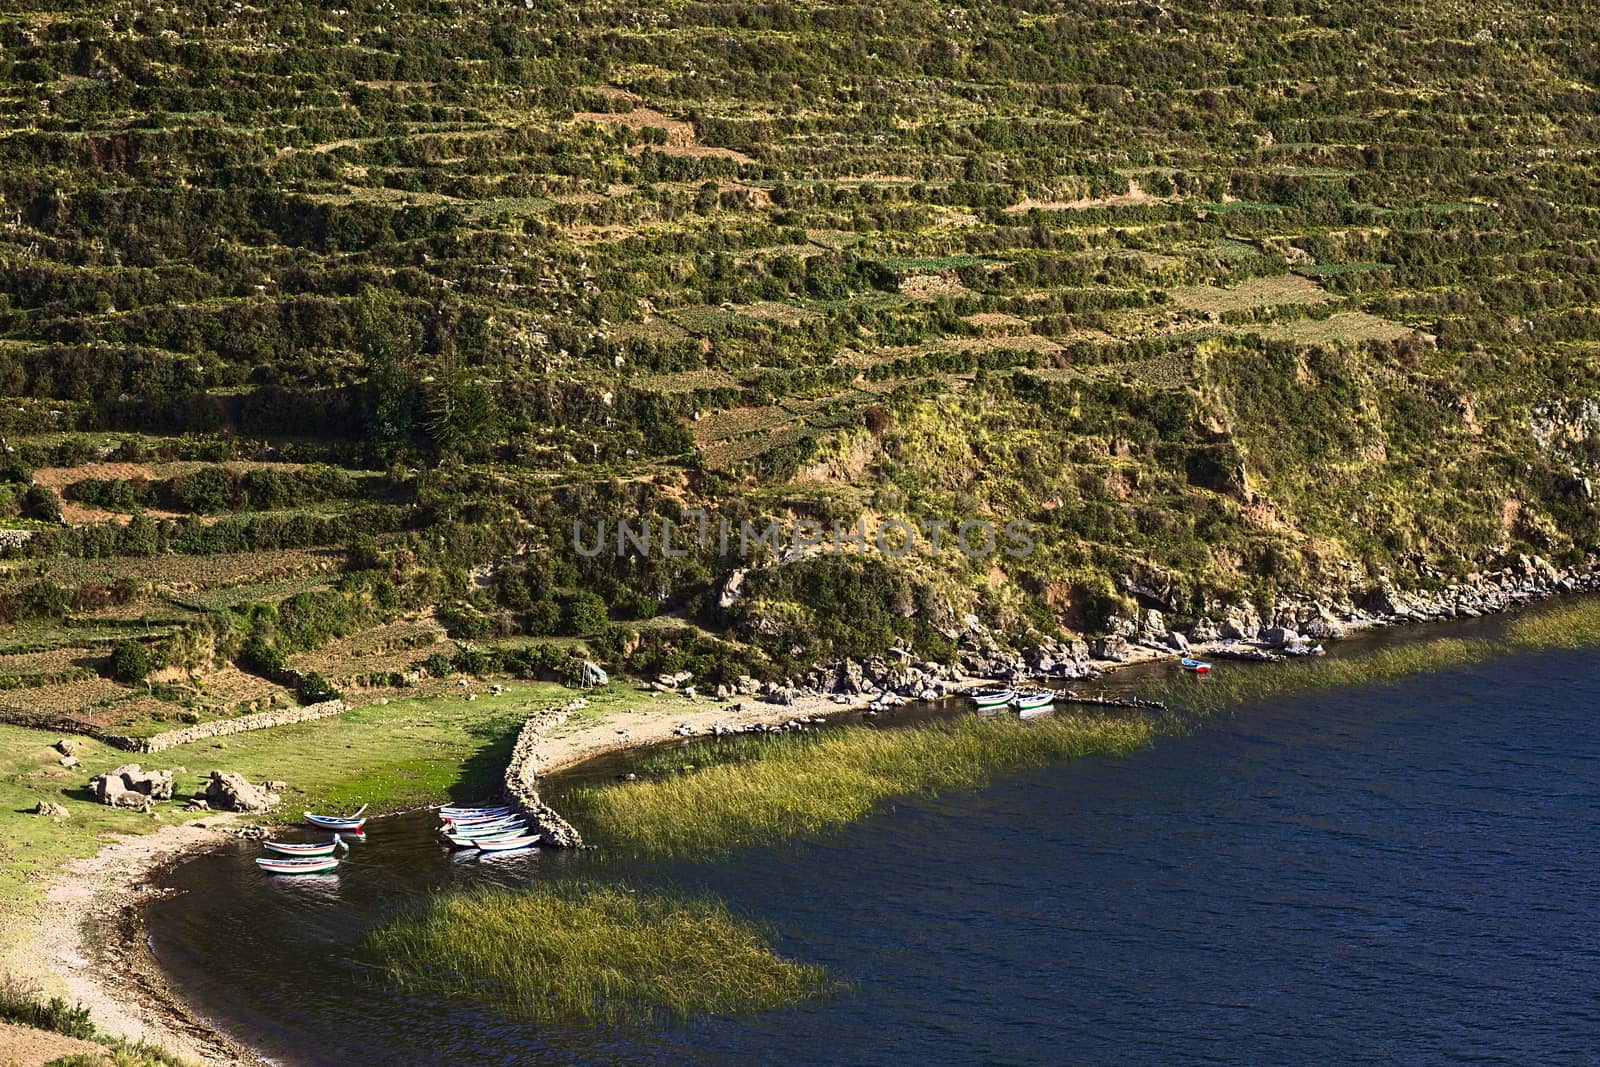 Rural Landscape on Isla del Sol in Lake Titicaca, Bolivia by sven